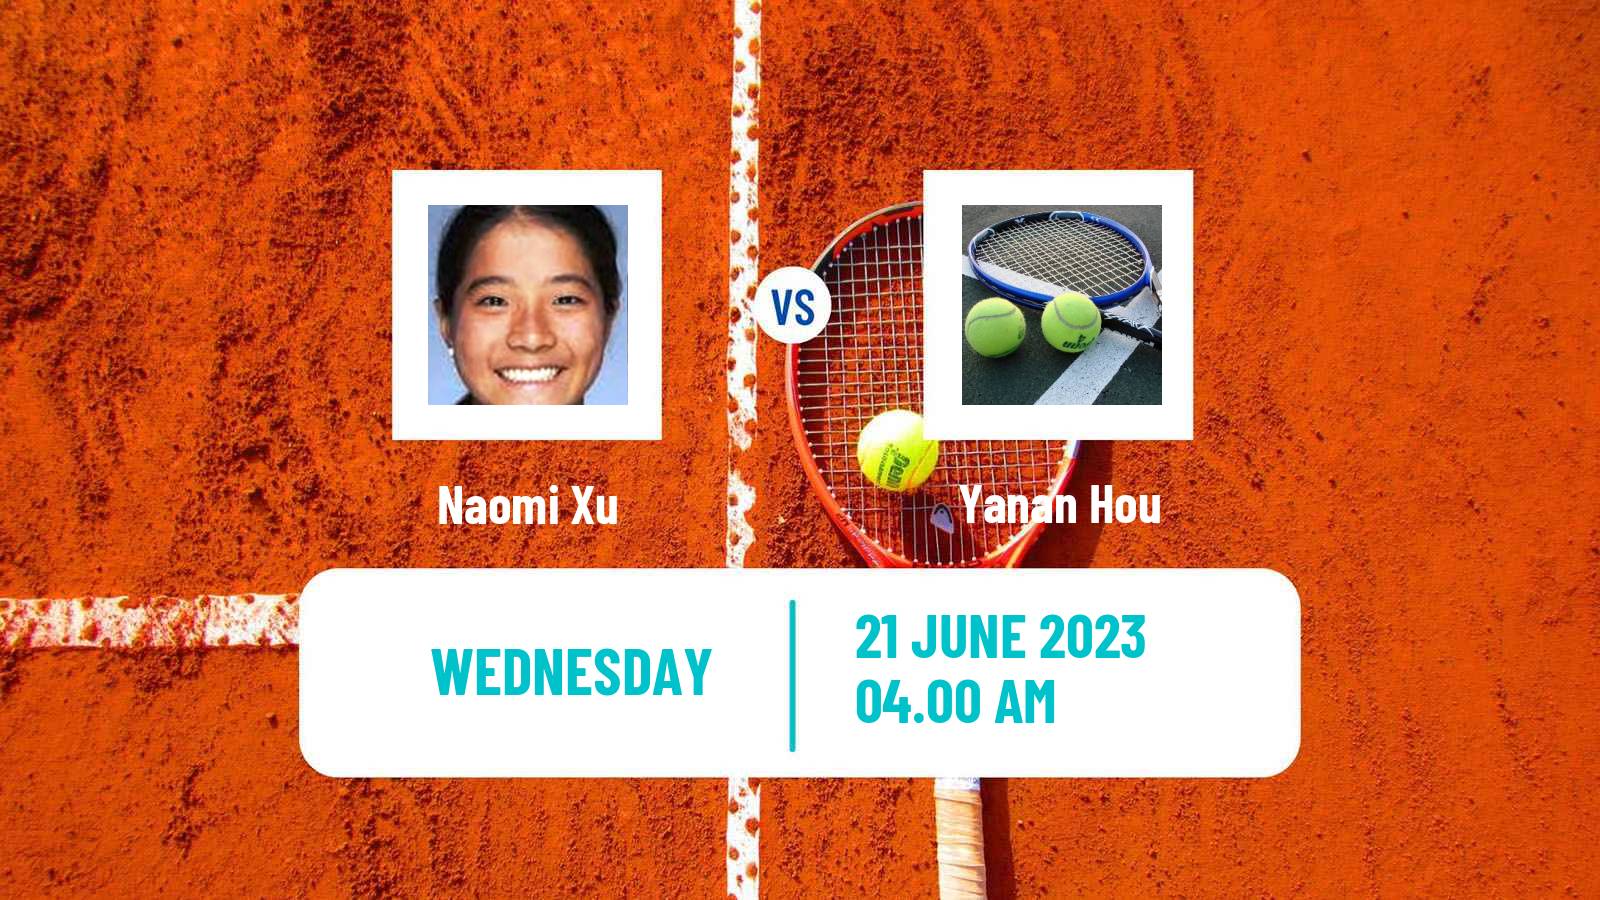 Tennis ITF W15 Tianjin 2 Women Naomi Xu - Yanan Hou